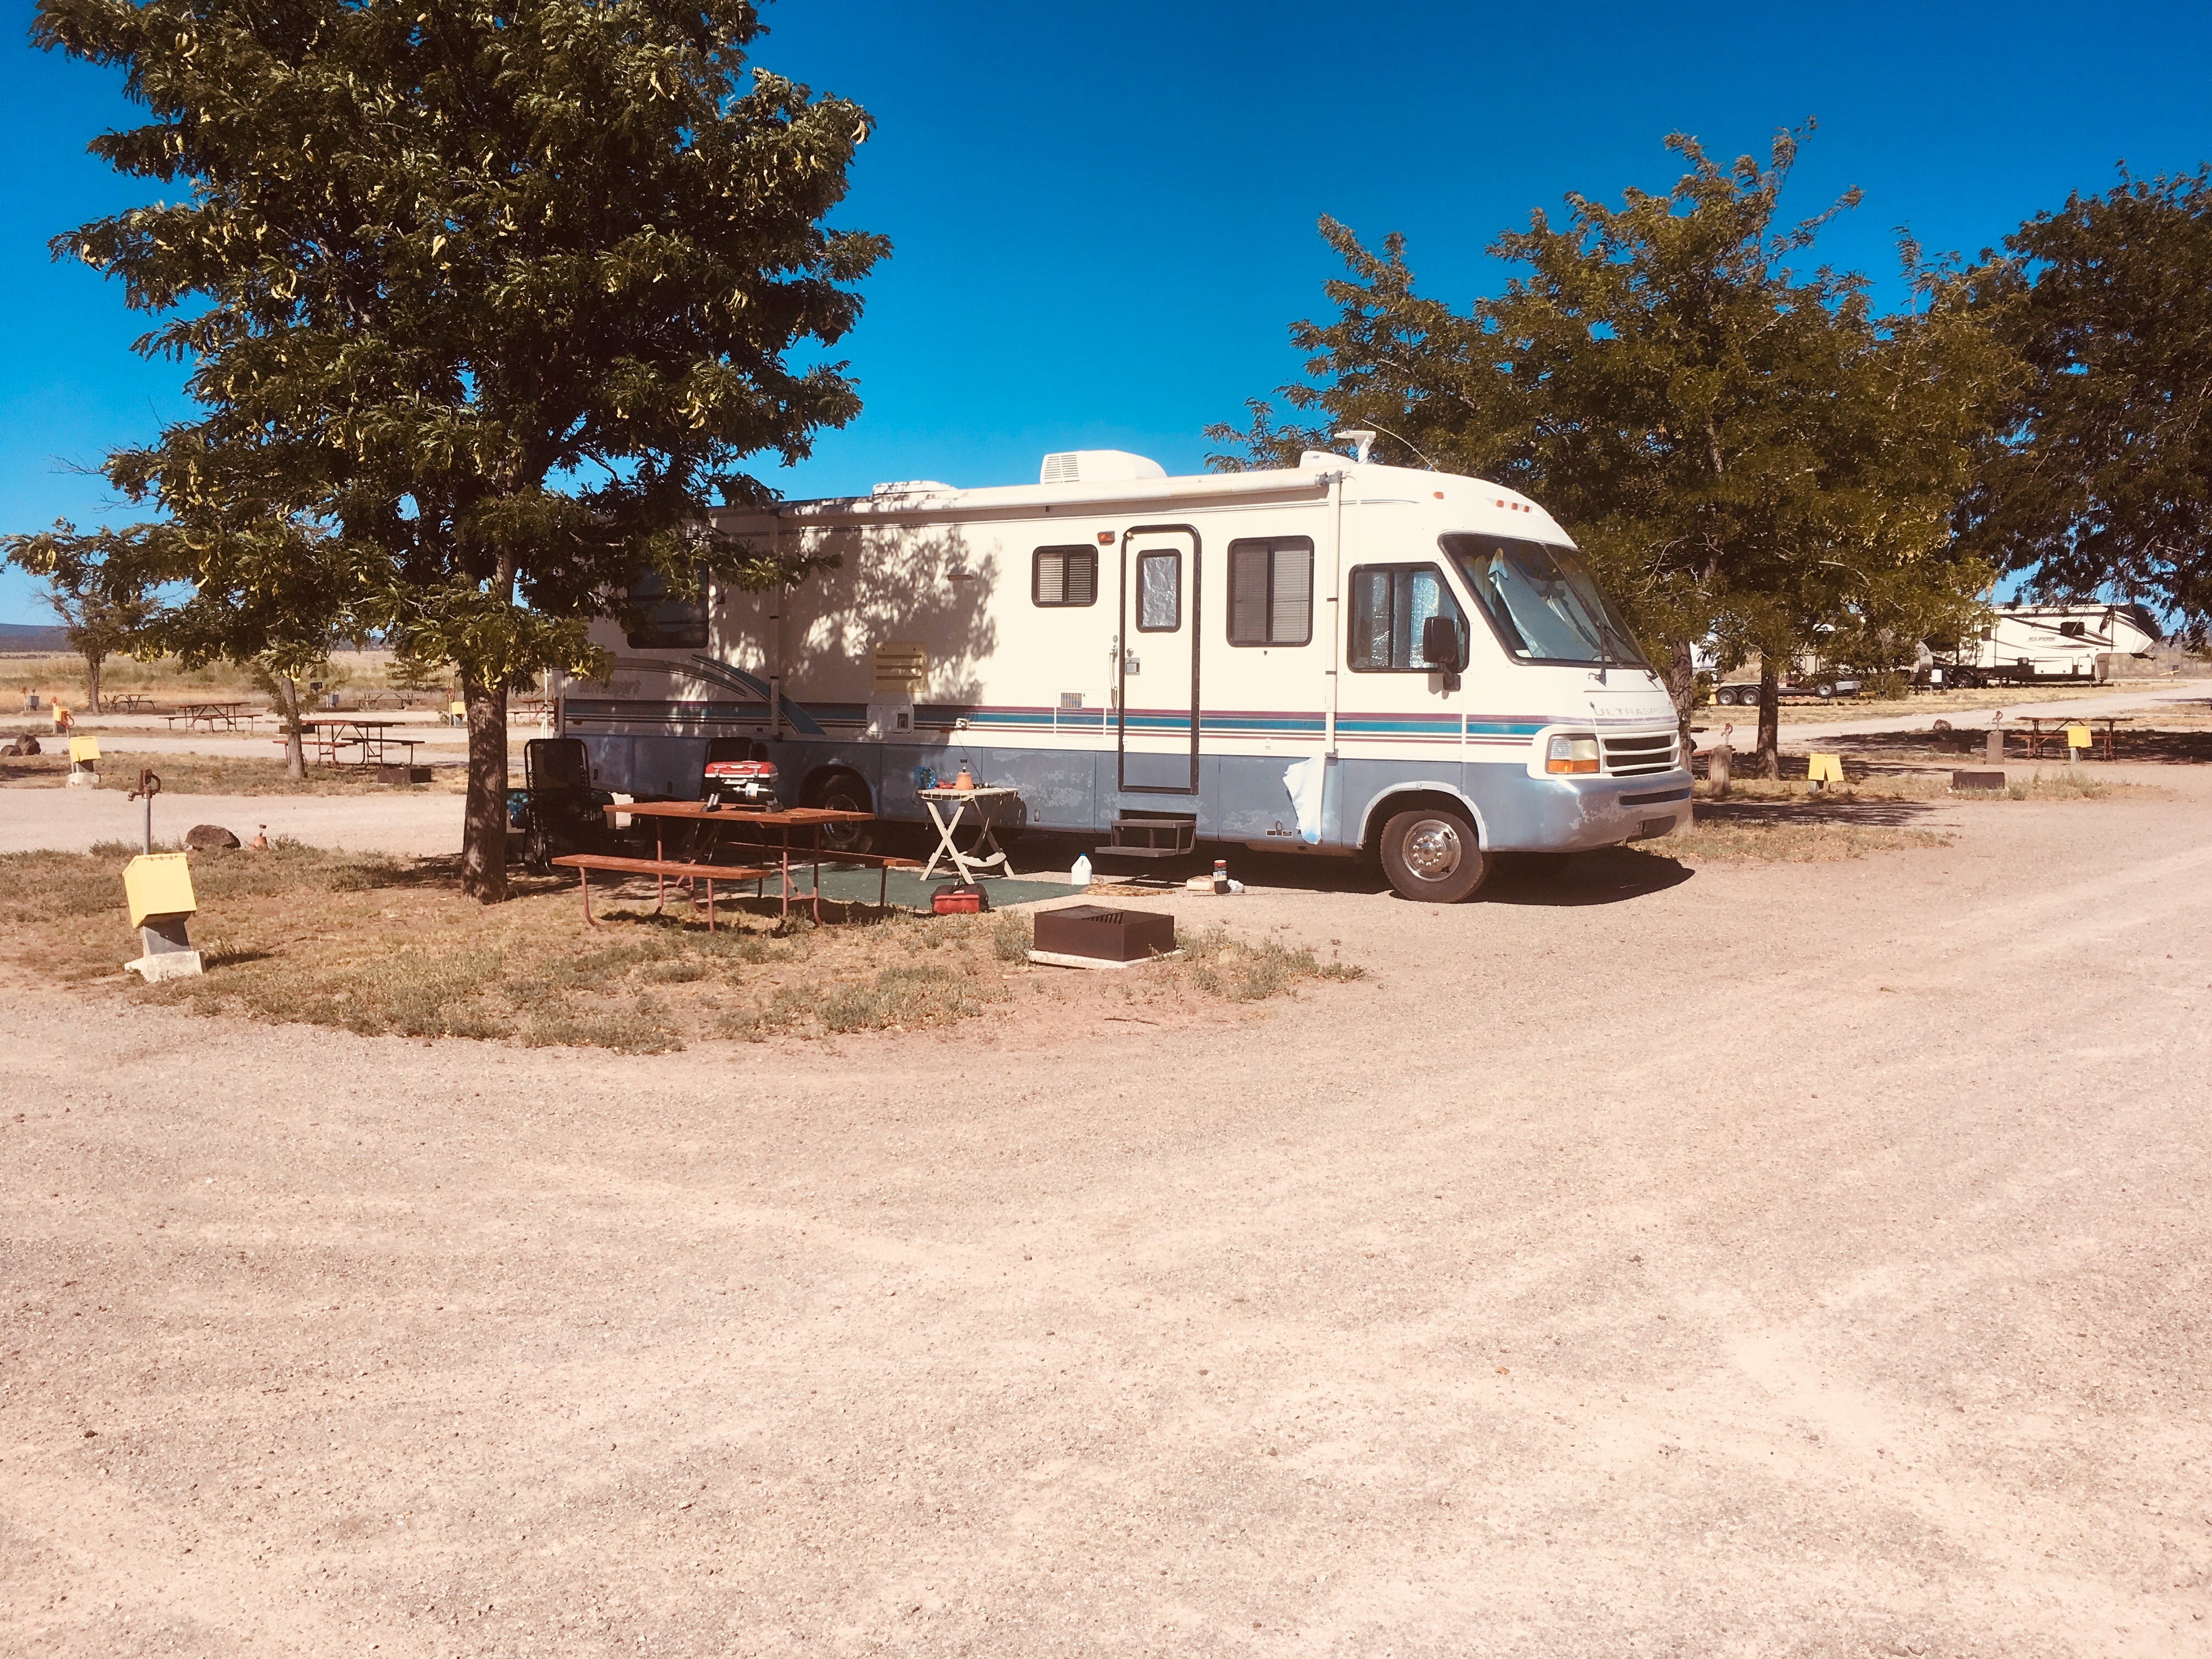 D5 campsite